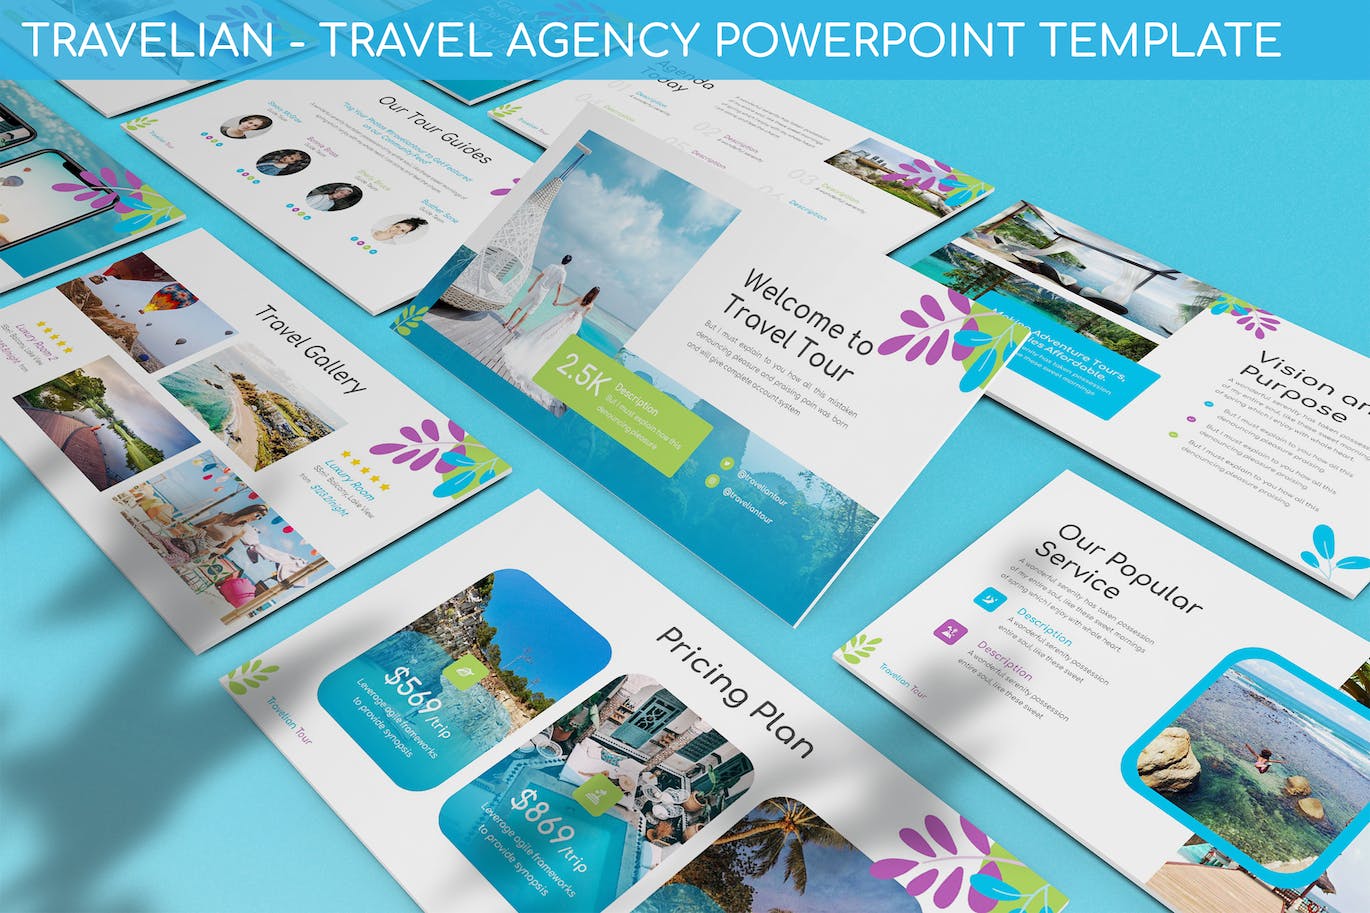 旅行社机构PPT幻灯片设计模板 Travelian – Travel Agency Powerpoint Template 幻灯图表 第1张